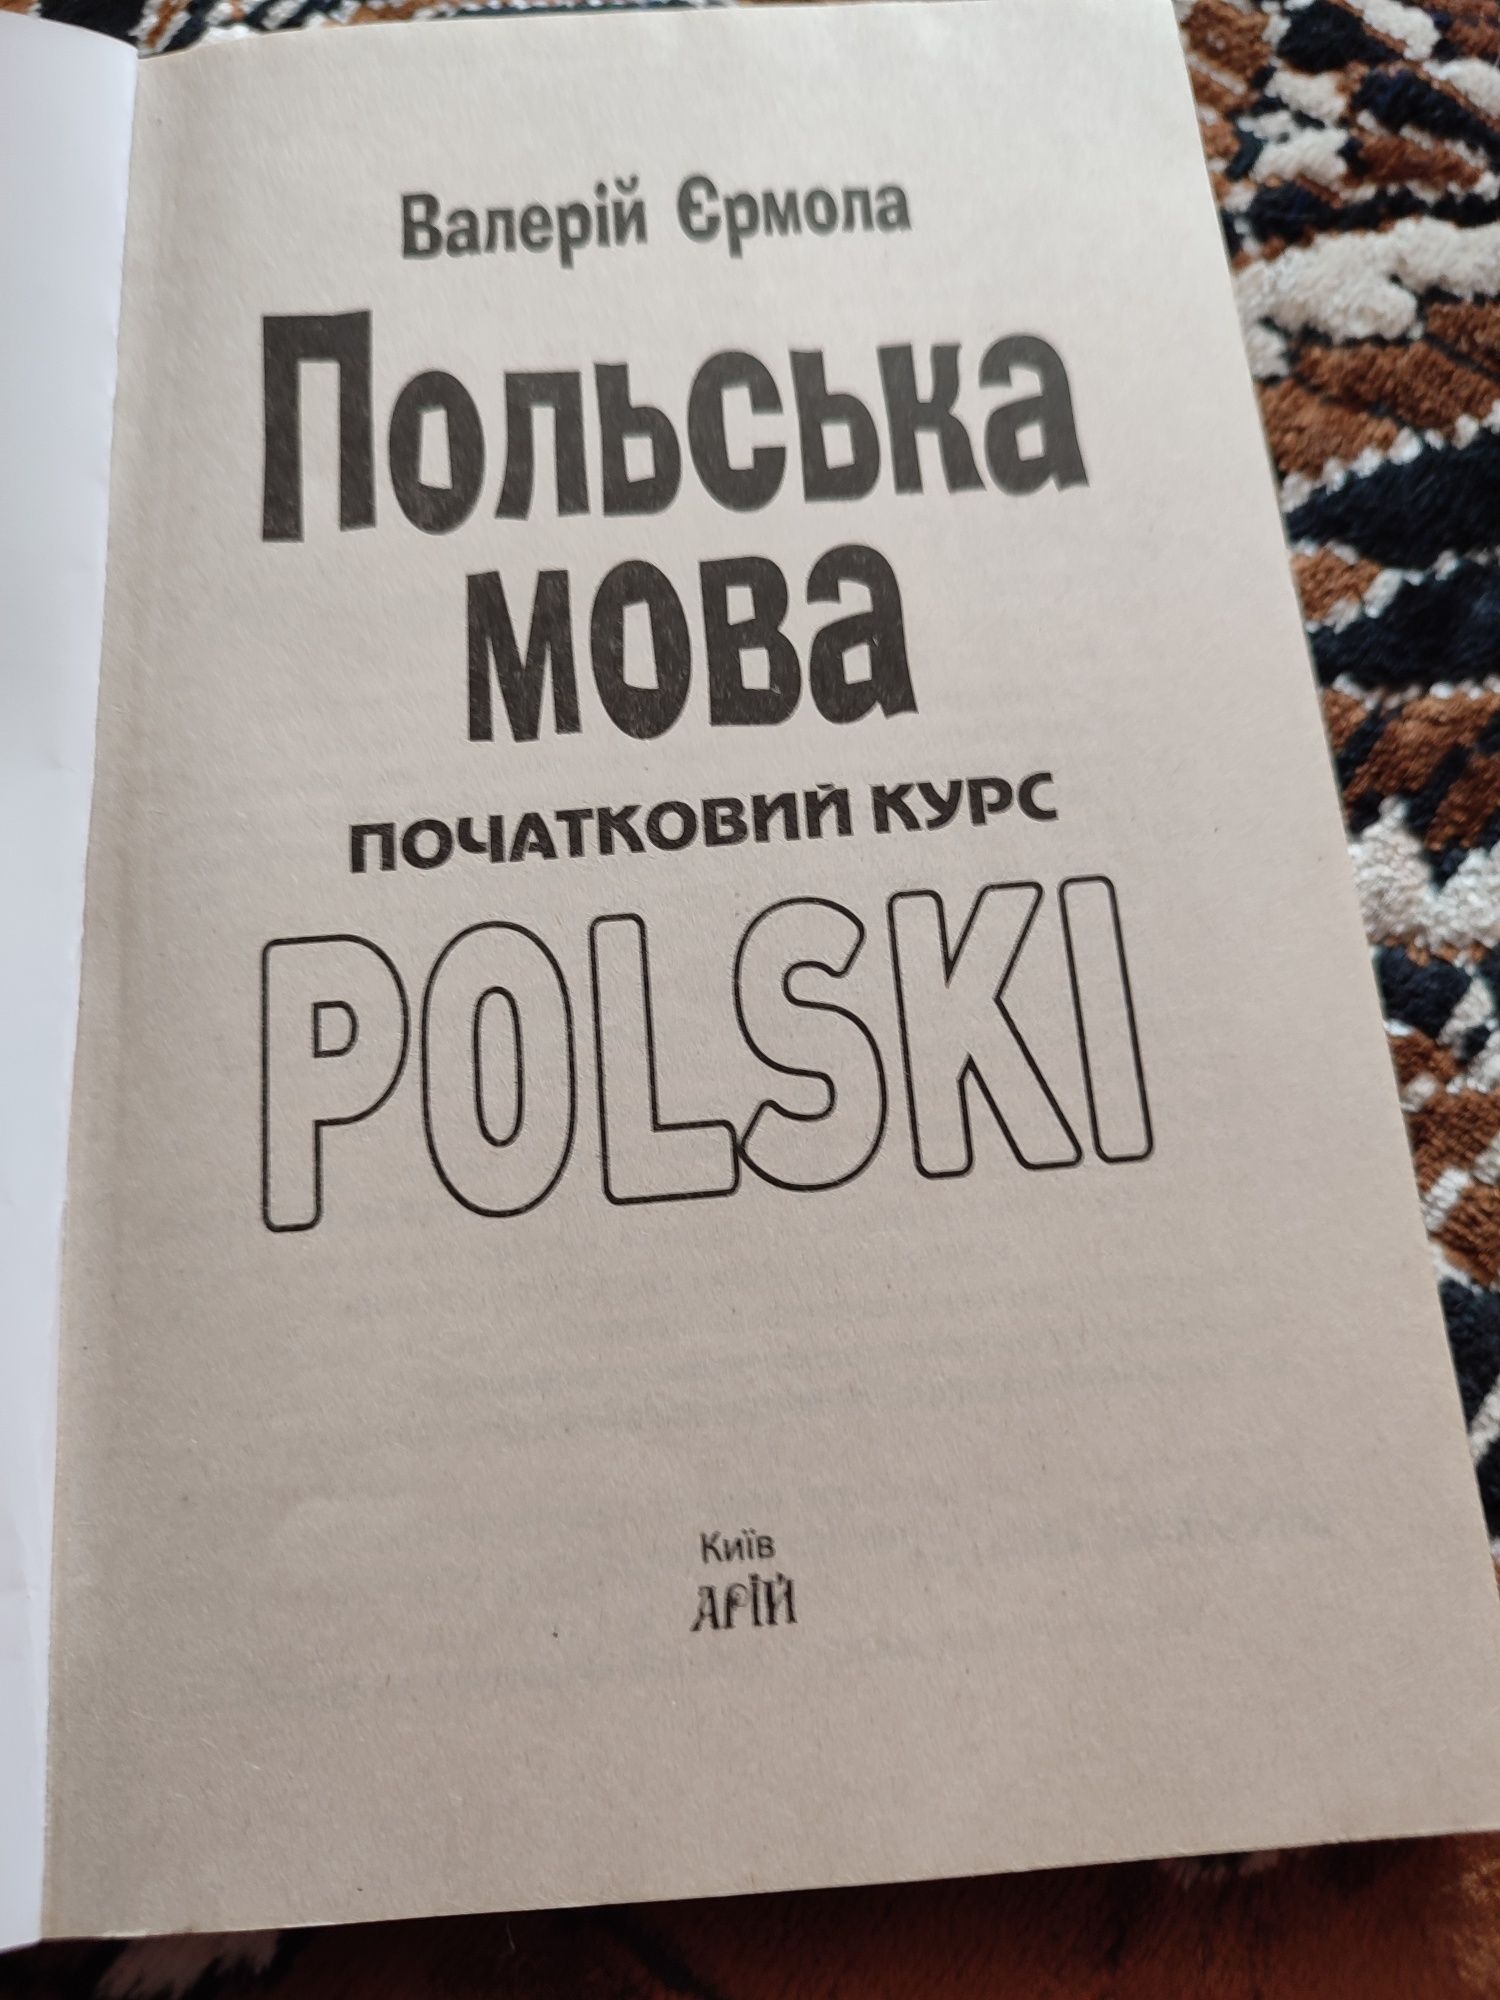 Підручник польської для початківців